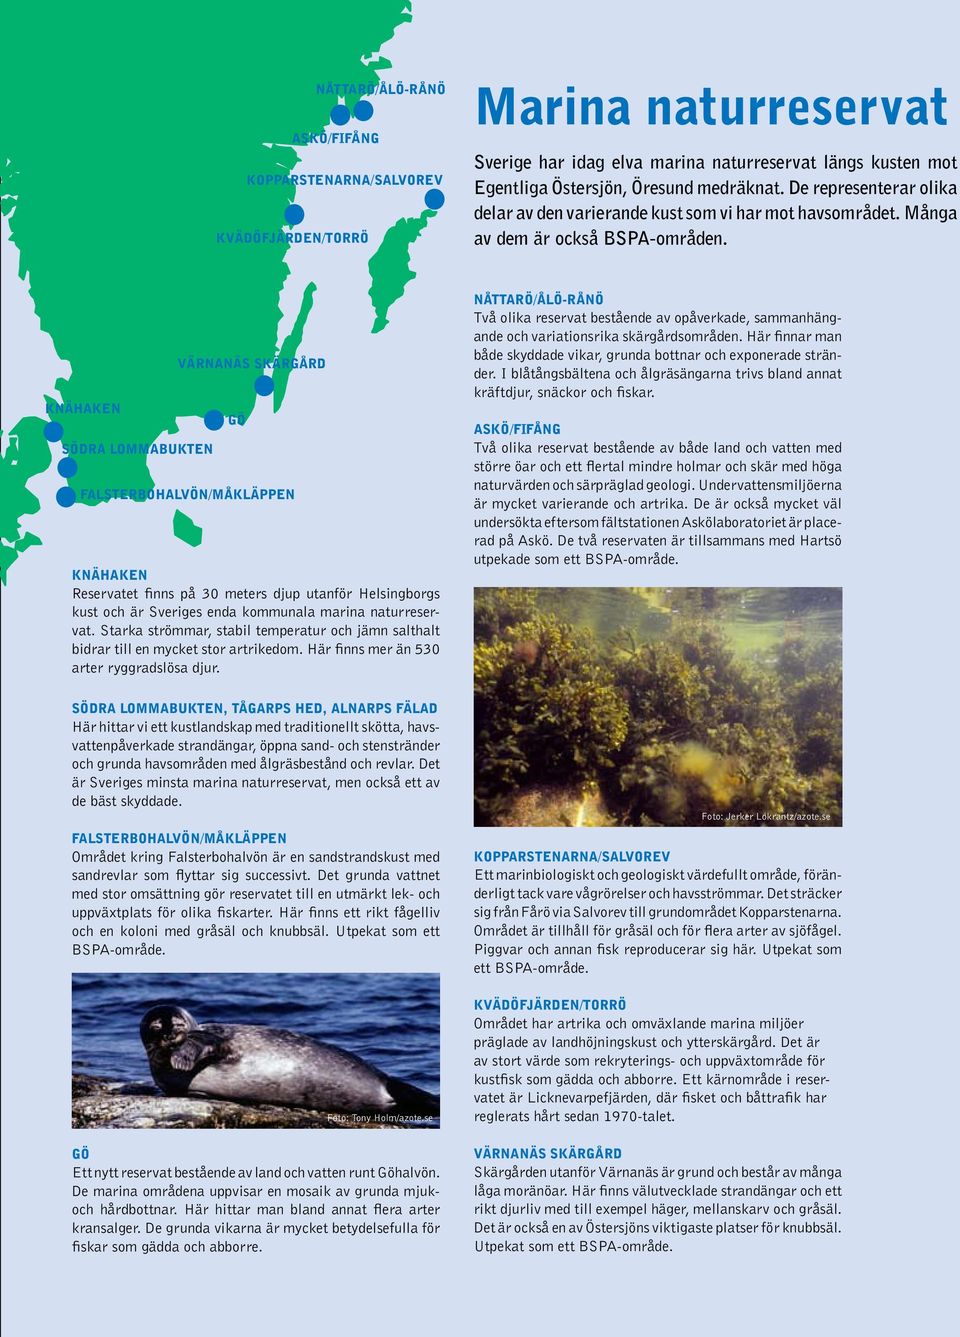 knähaken södra lommabukten värnanäs skärgård gö falsterbohalvön/måkläppen Knähaken Reservatet finns på 30 meters djup utanför Helsingborgs kust och är Sveriges enda kommunala marina naturreservat.